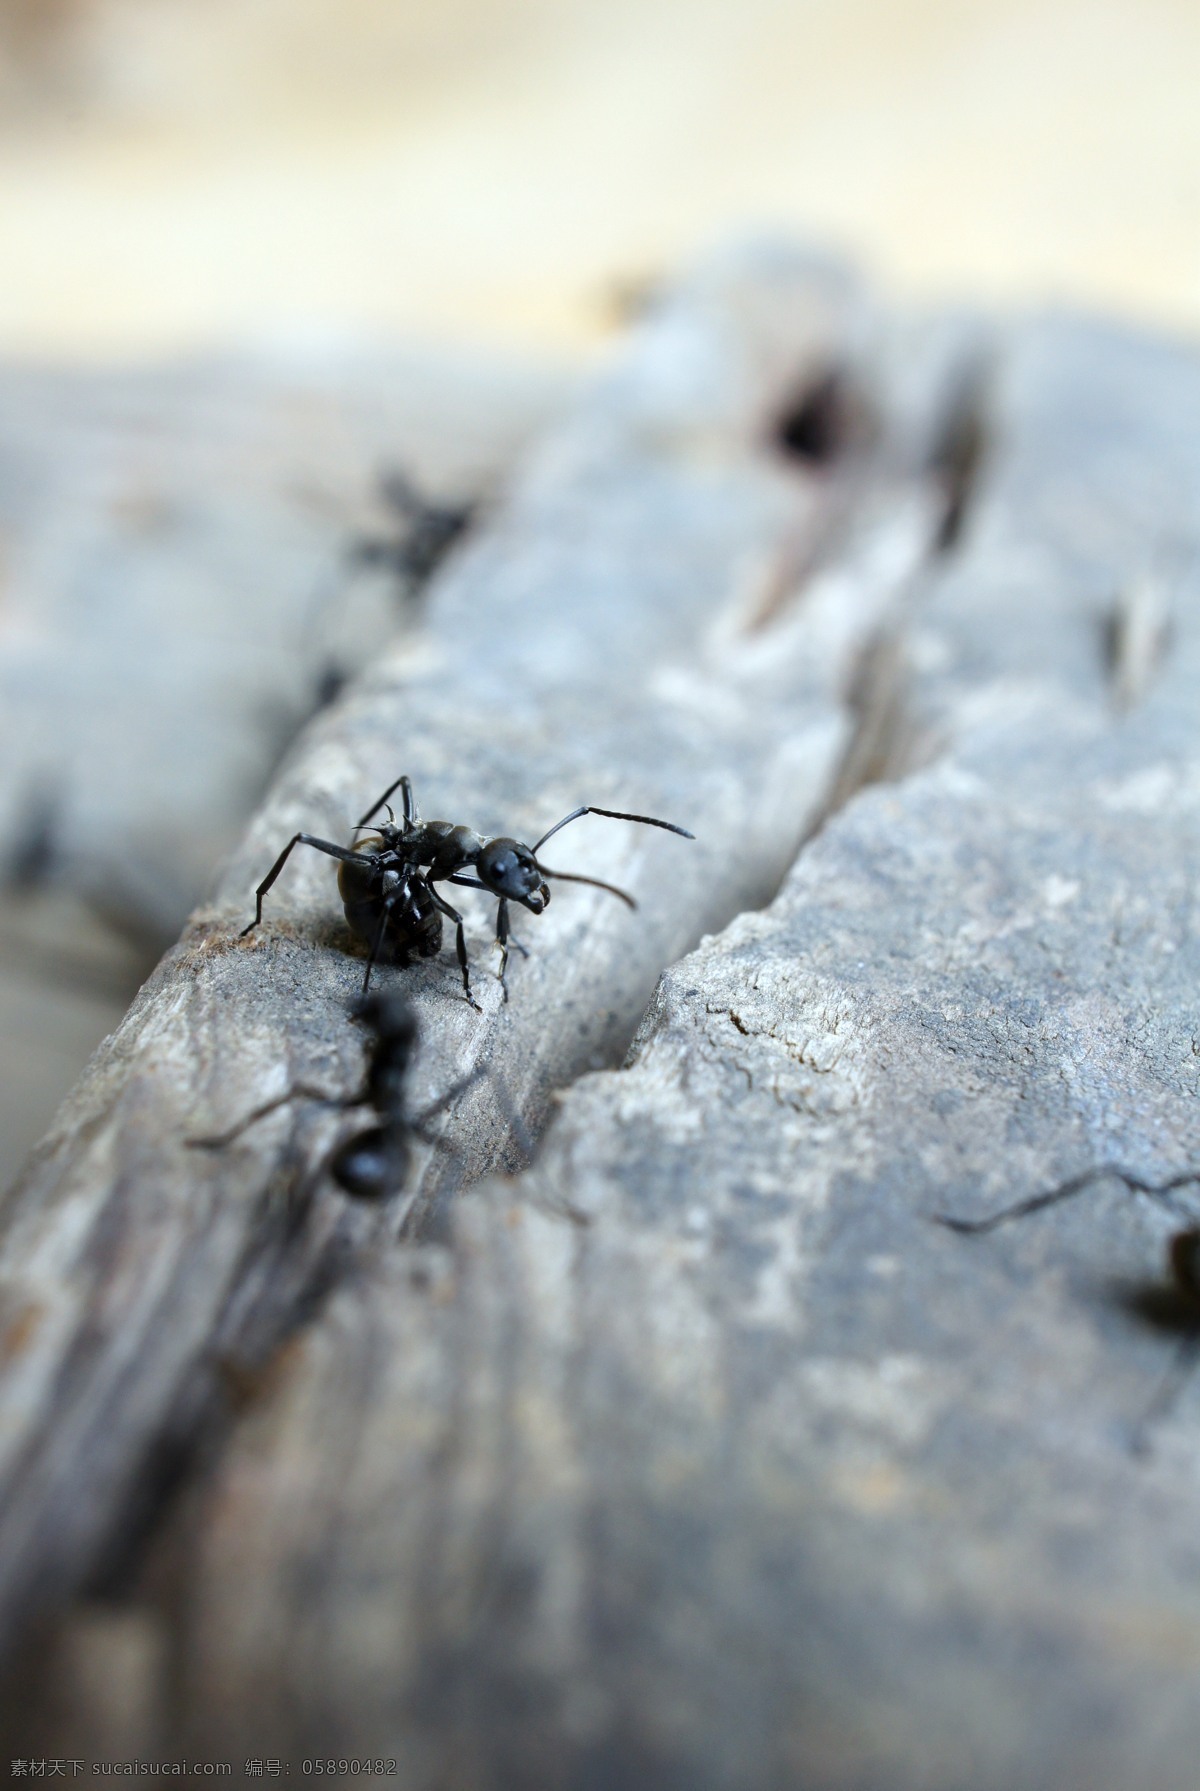 草丛 枯叶 昆虫 蚂蚁 生物 生物世界 微观 工蚁 大蚂蚁 微距 风湿 触角 自然 觅食 群体 害虫